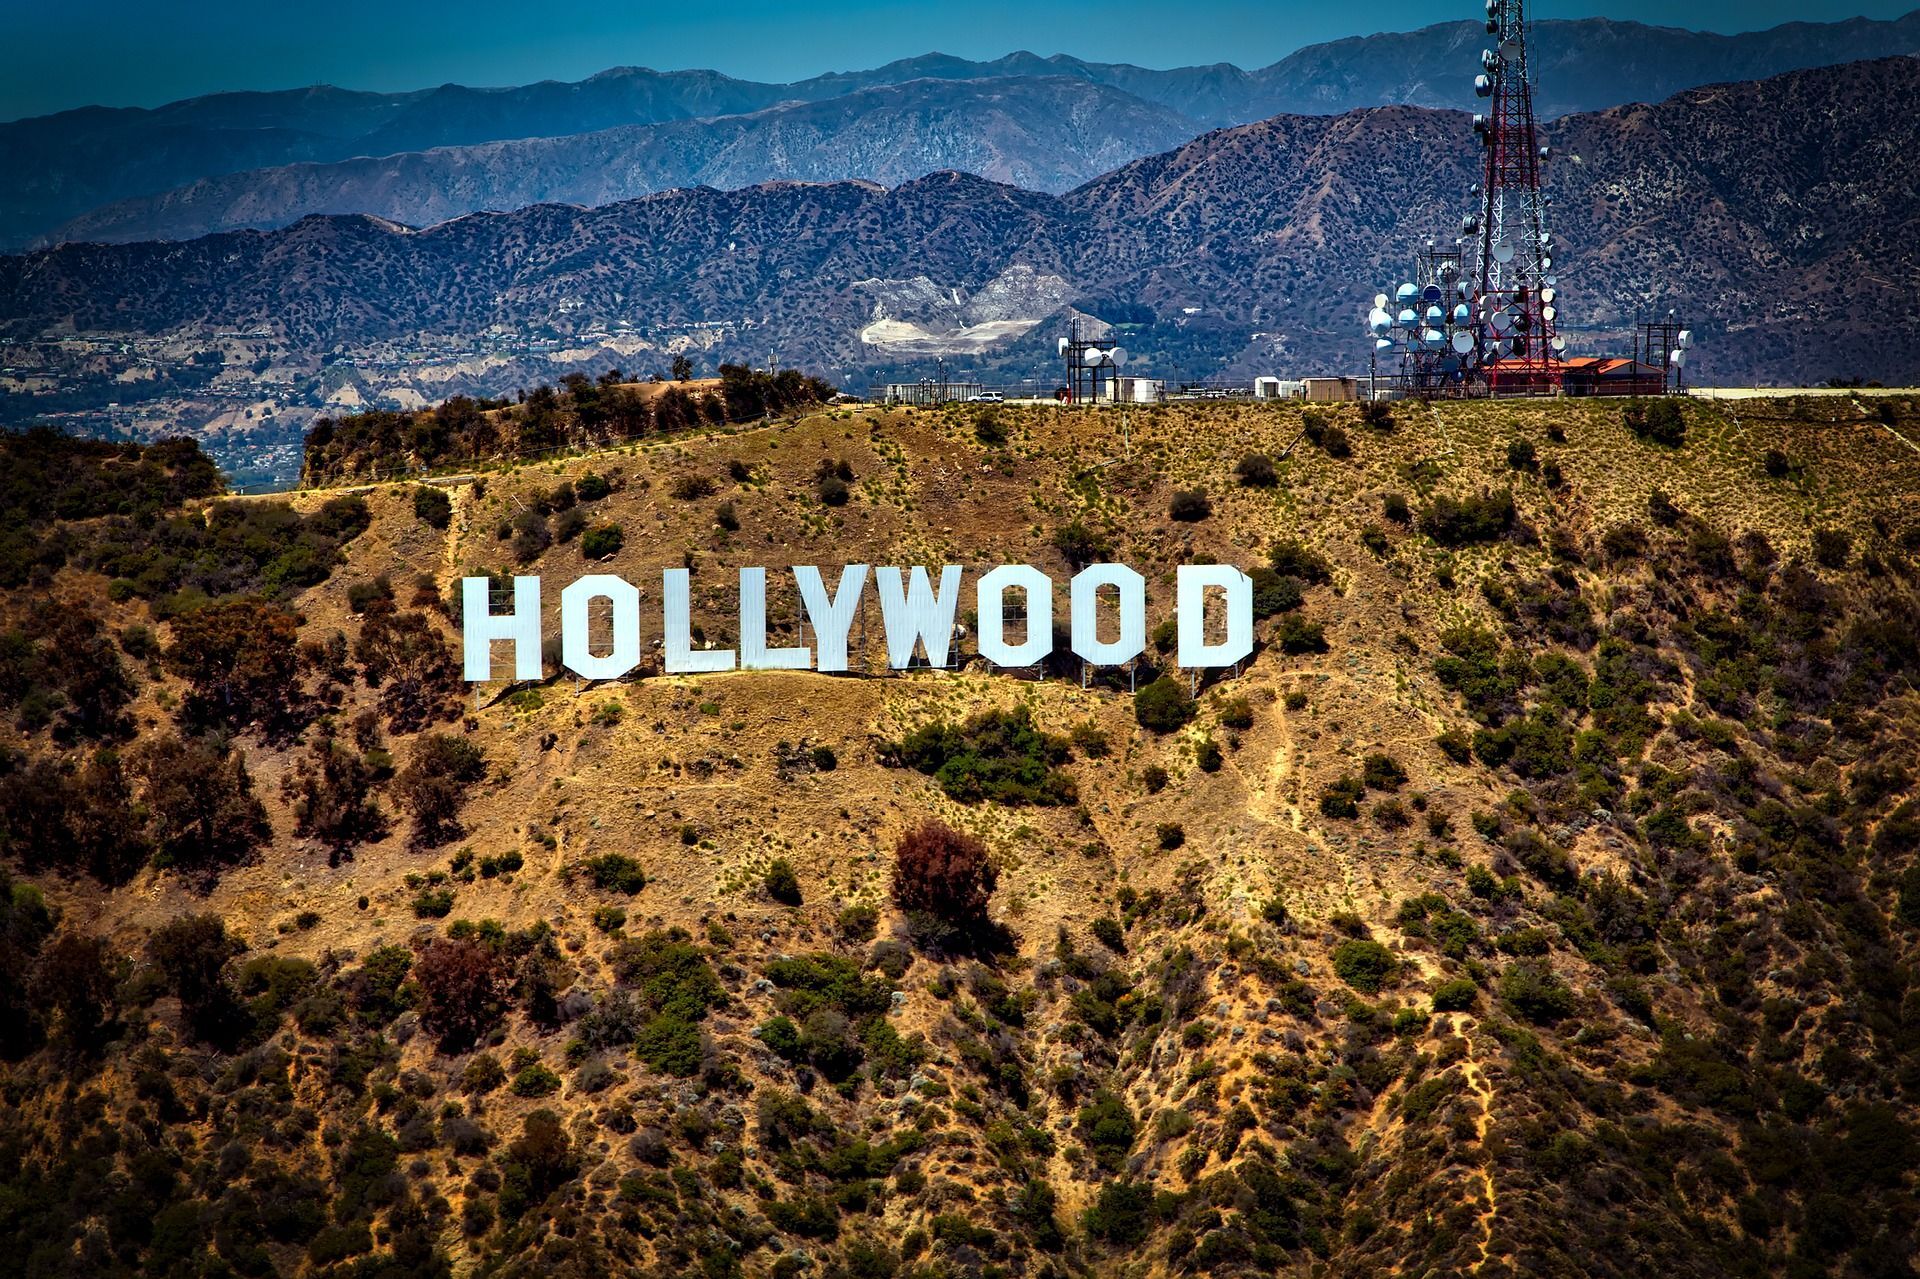 Tours levam até o melhor lugar para fazer a foto especial com o letreiro de Hollywood